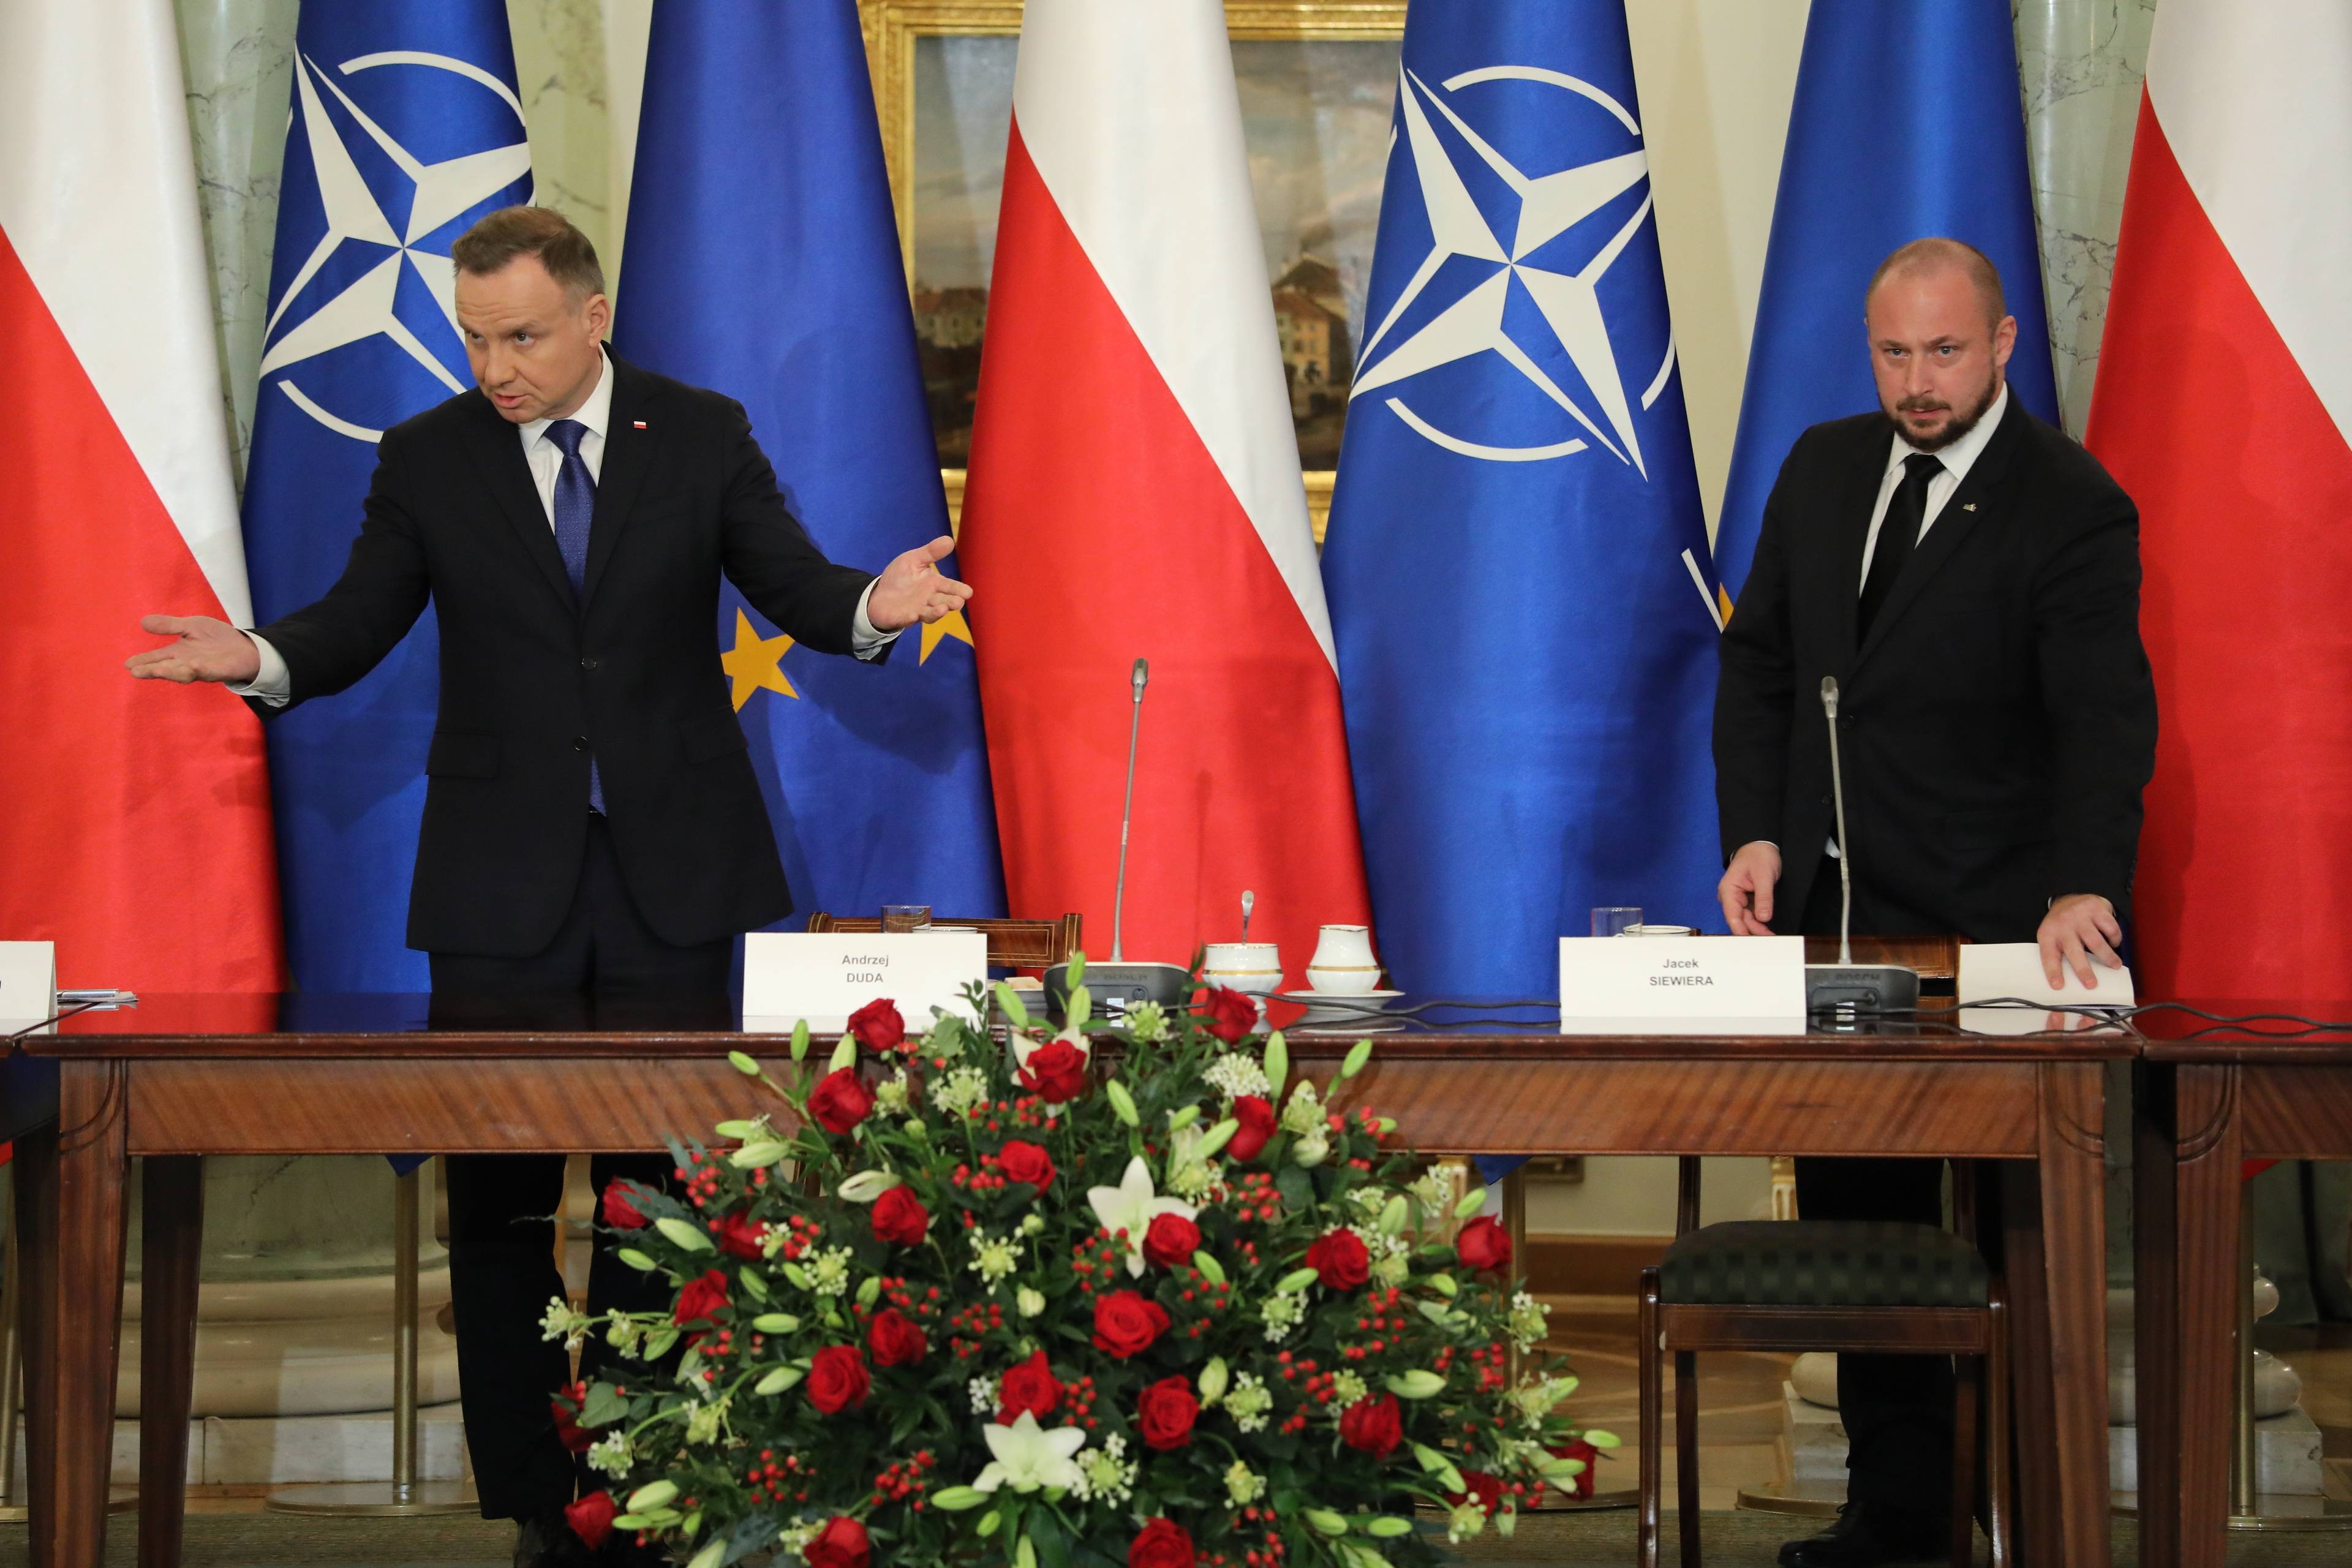 Dwaj mezczyźni w garniturach na tle flag Polski i NATO: Andrzej Duda i Jacek Siewiera. Duda rozkłada ręce/